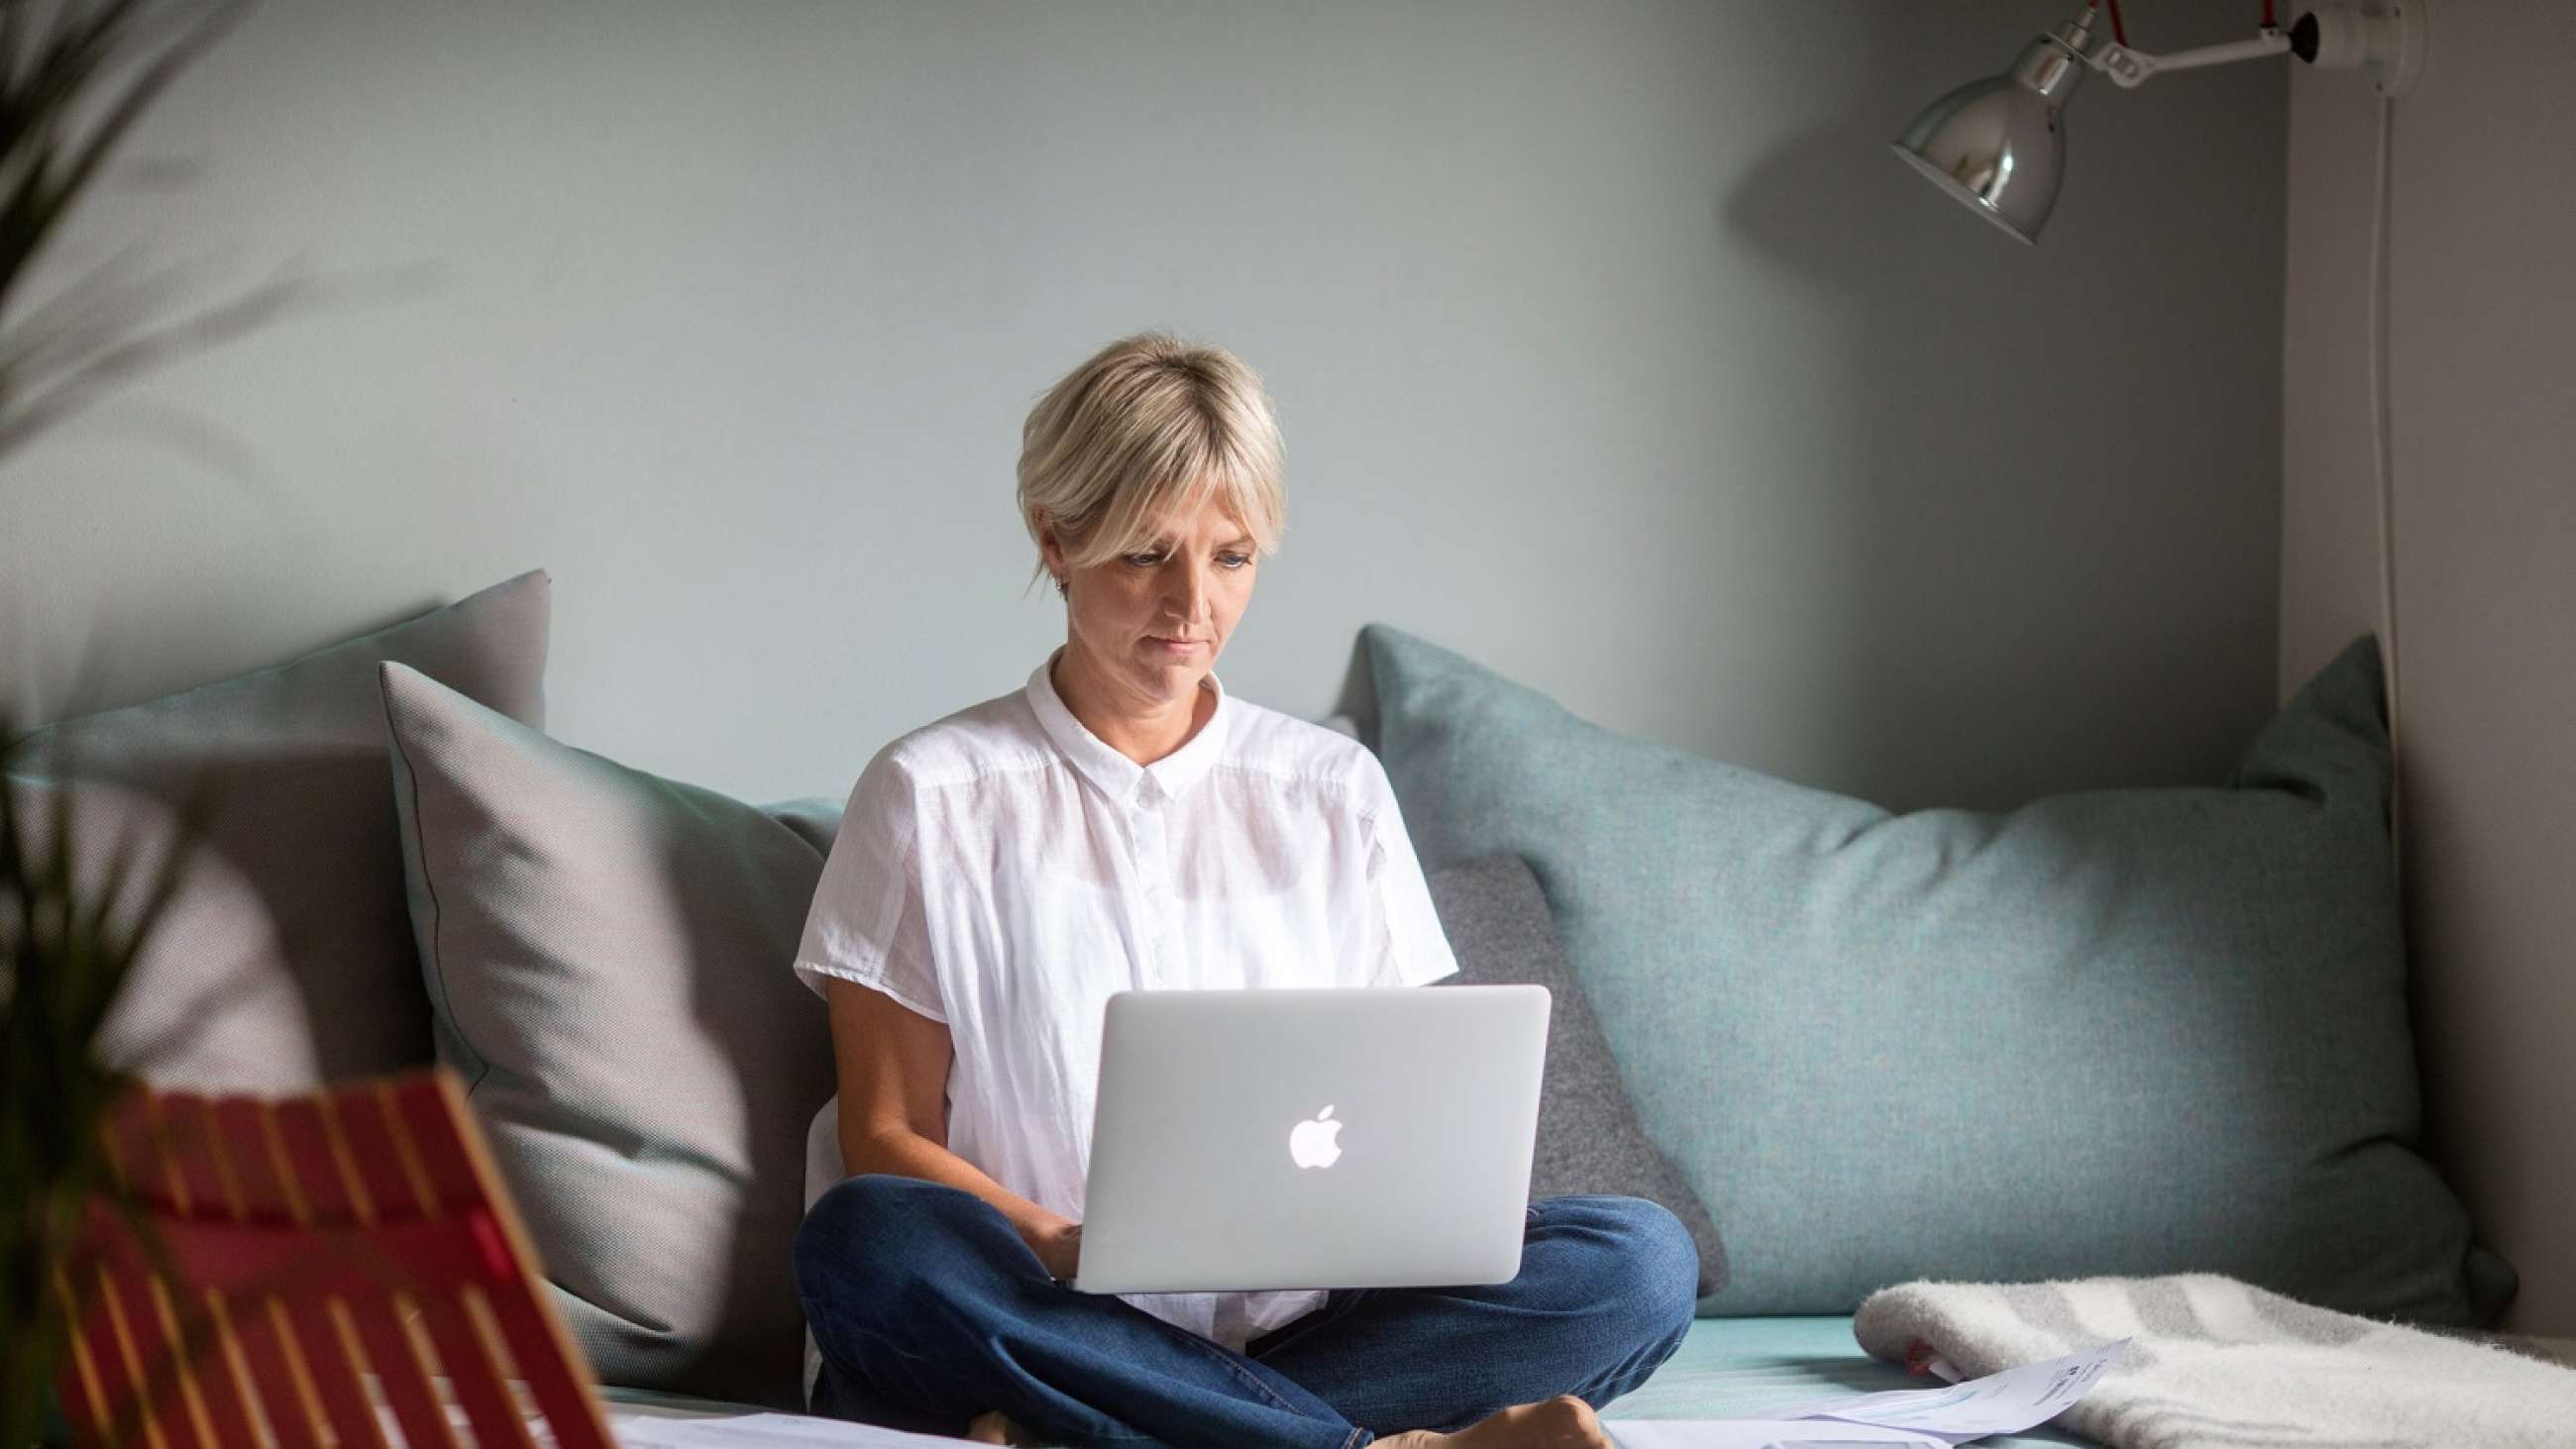 Kvinne med jeans, hvit bluse og kort lyst, hår sittende i sofa med laptop i fanget.